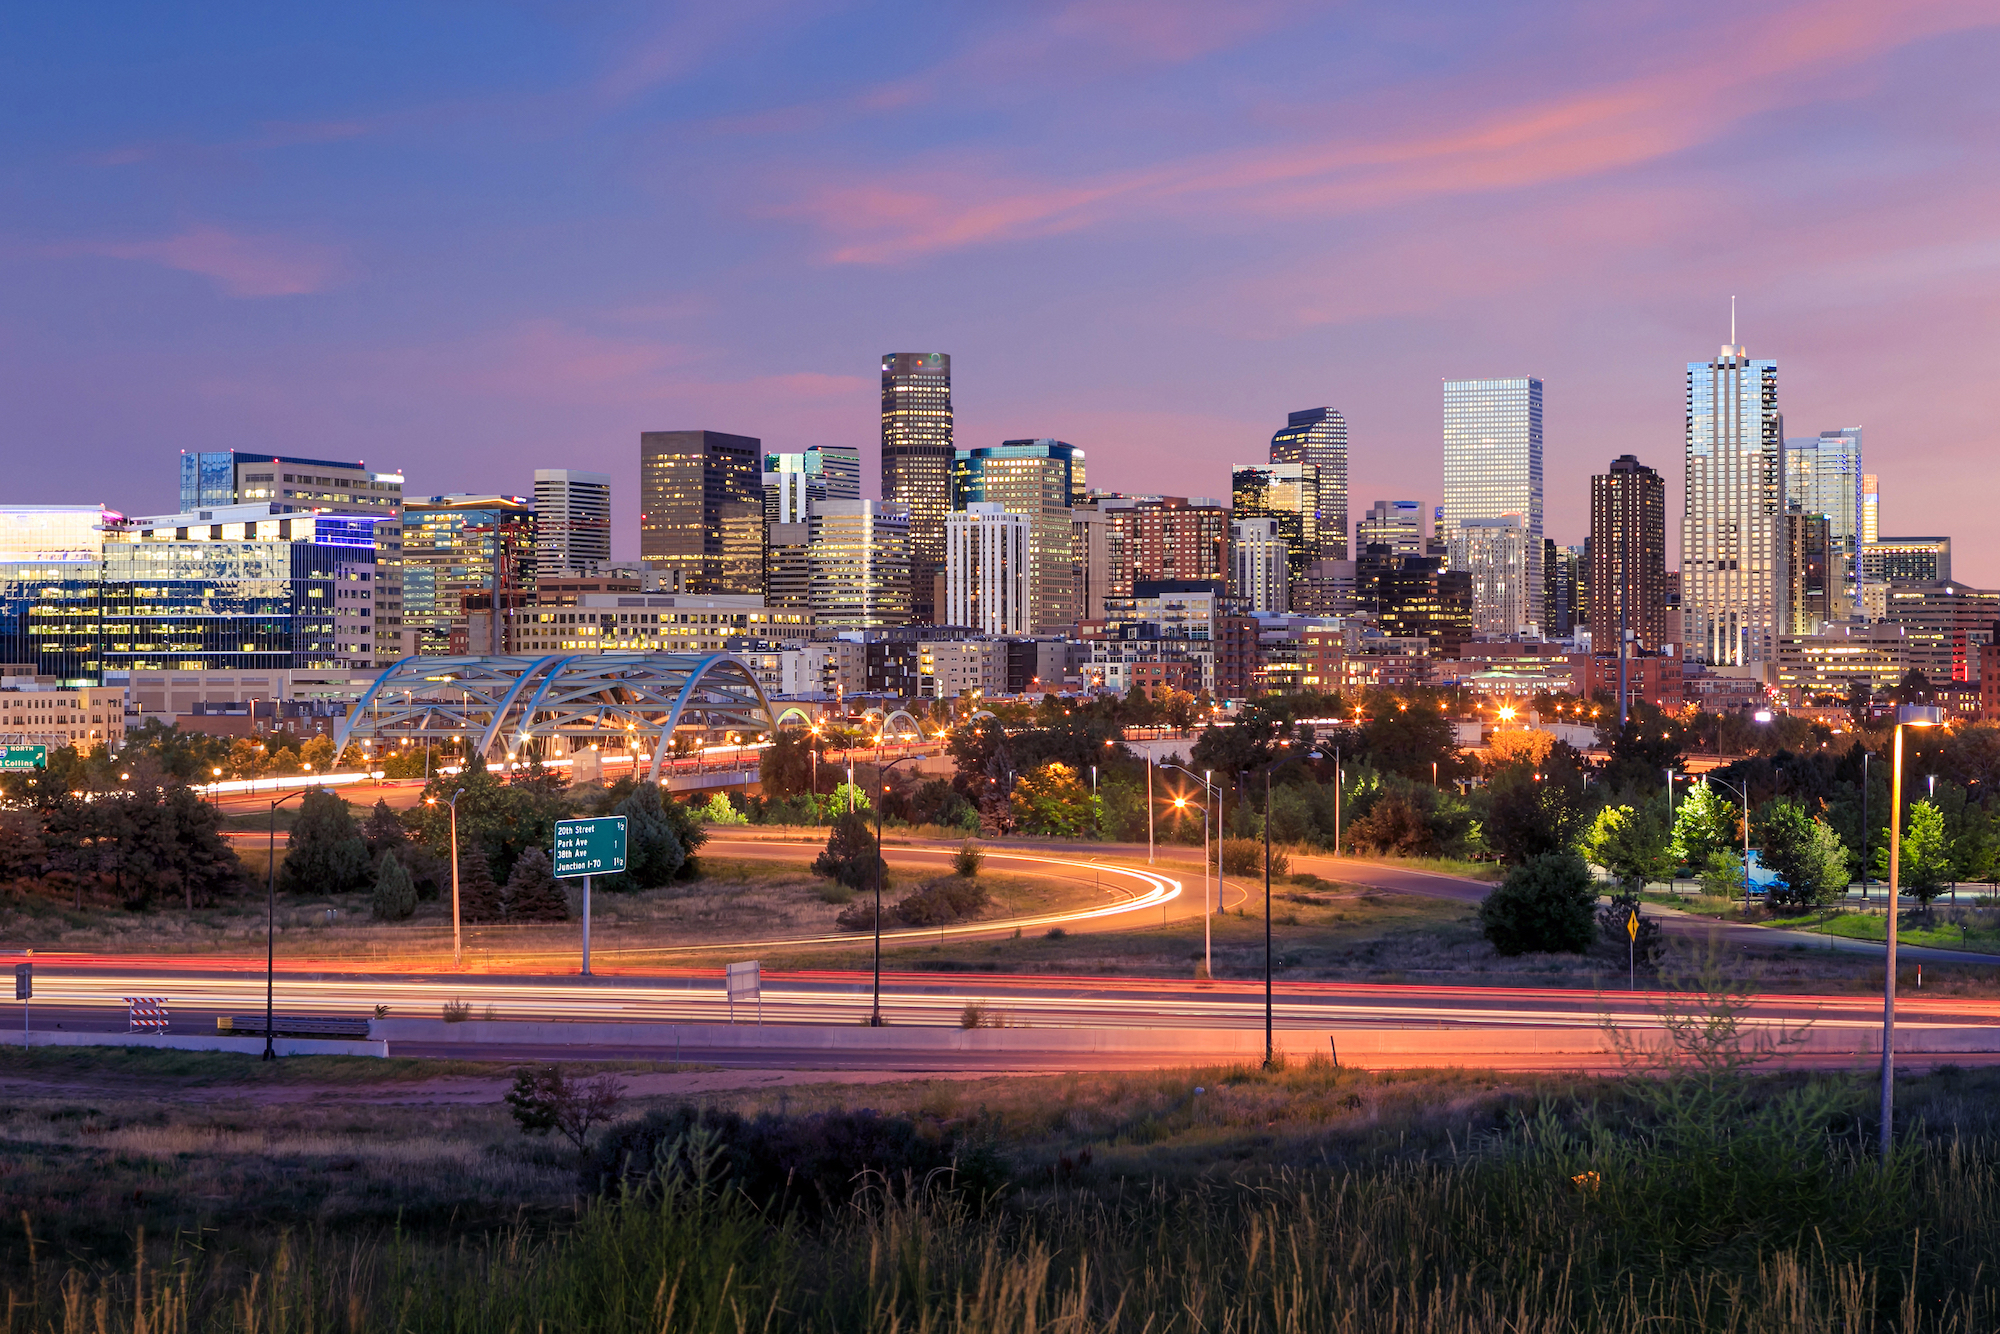 A photo of the Denver skyline.